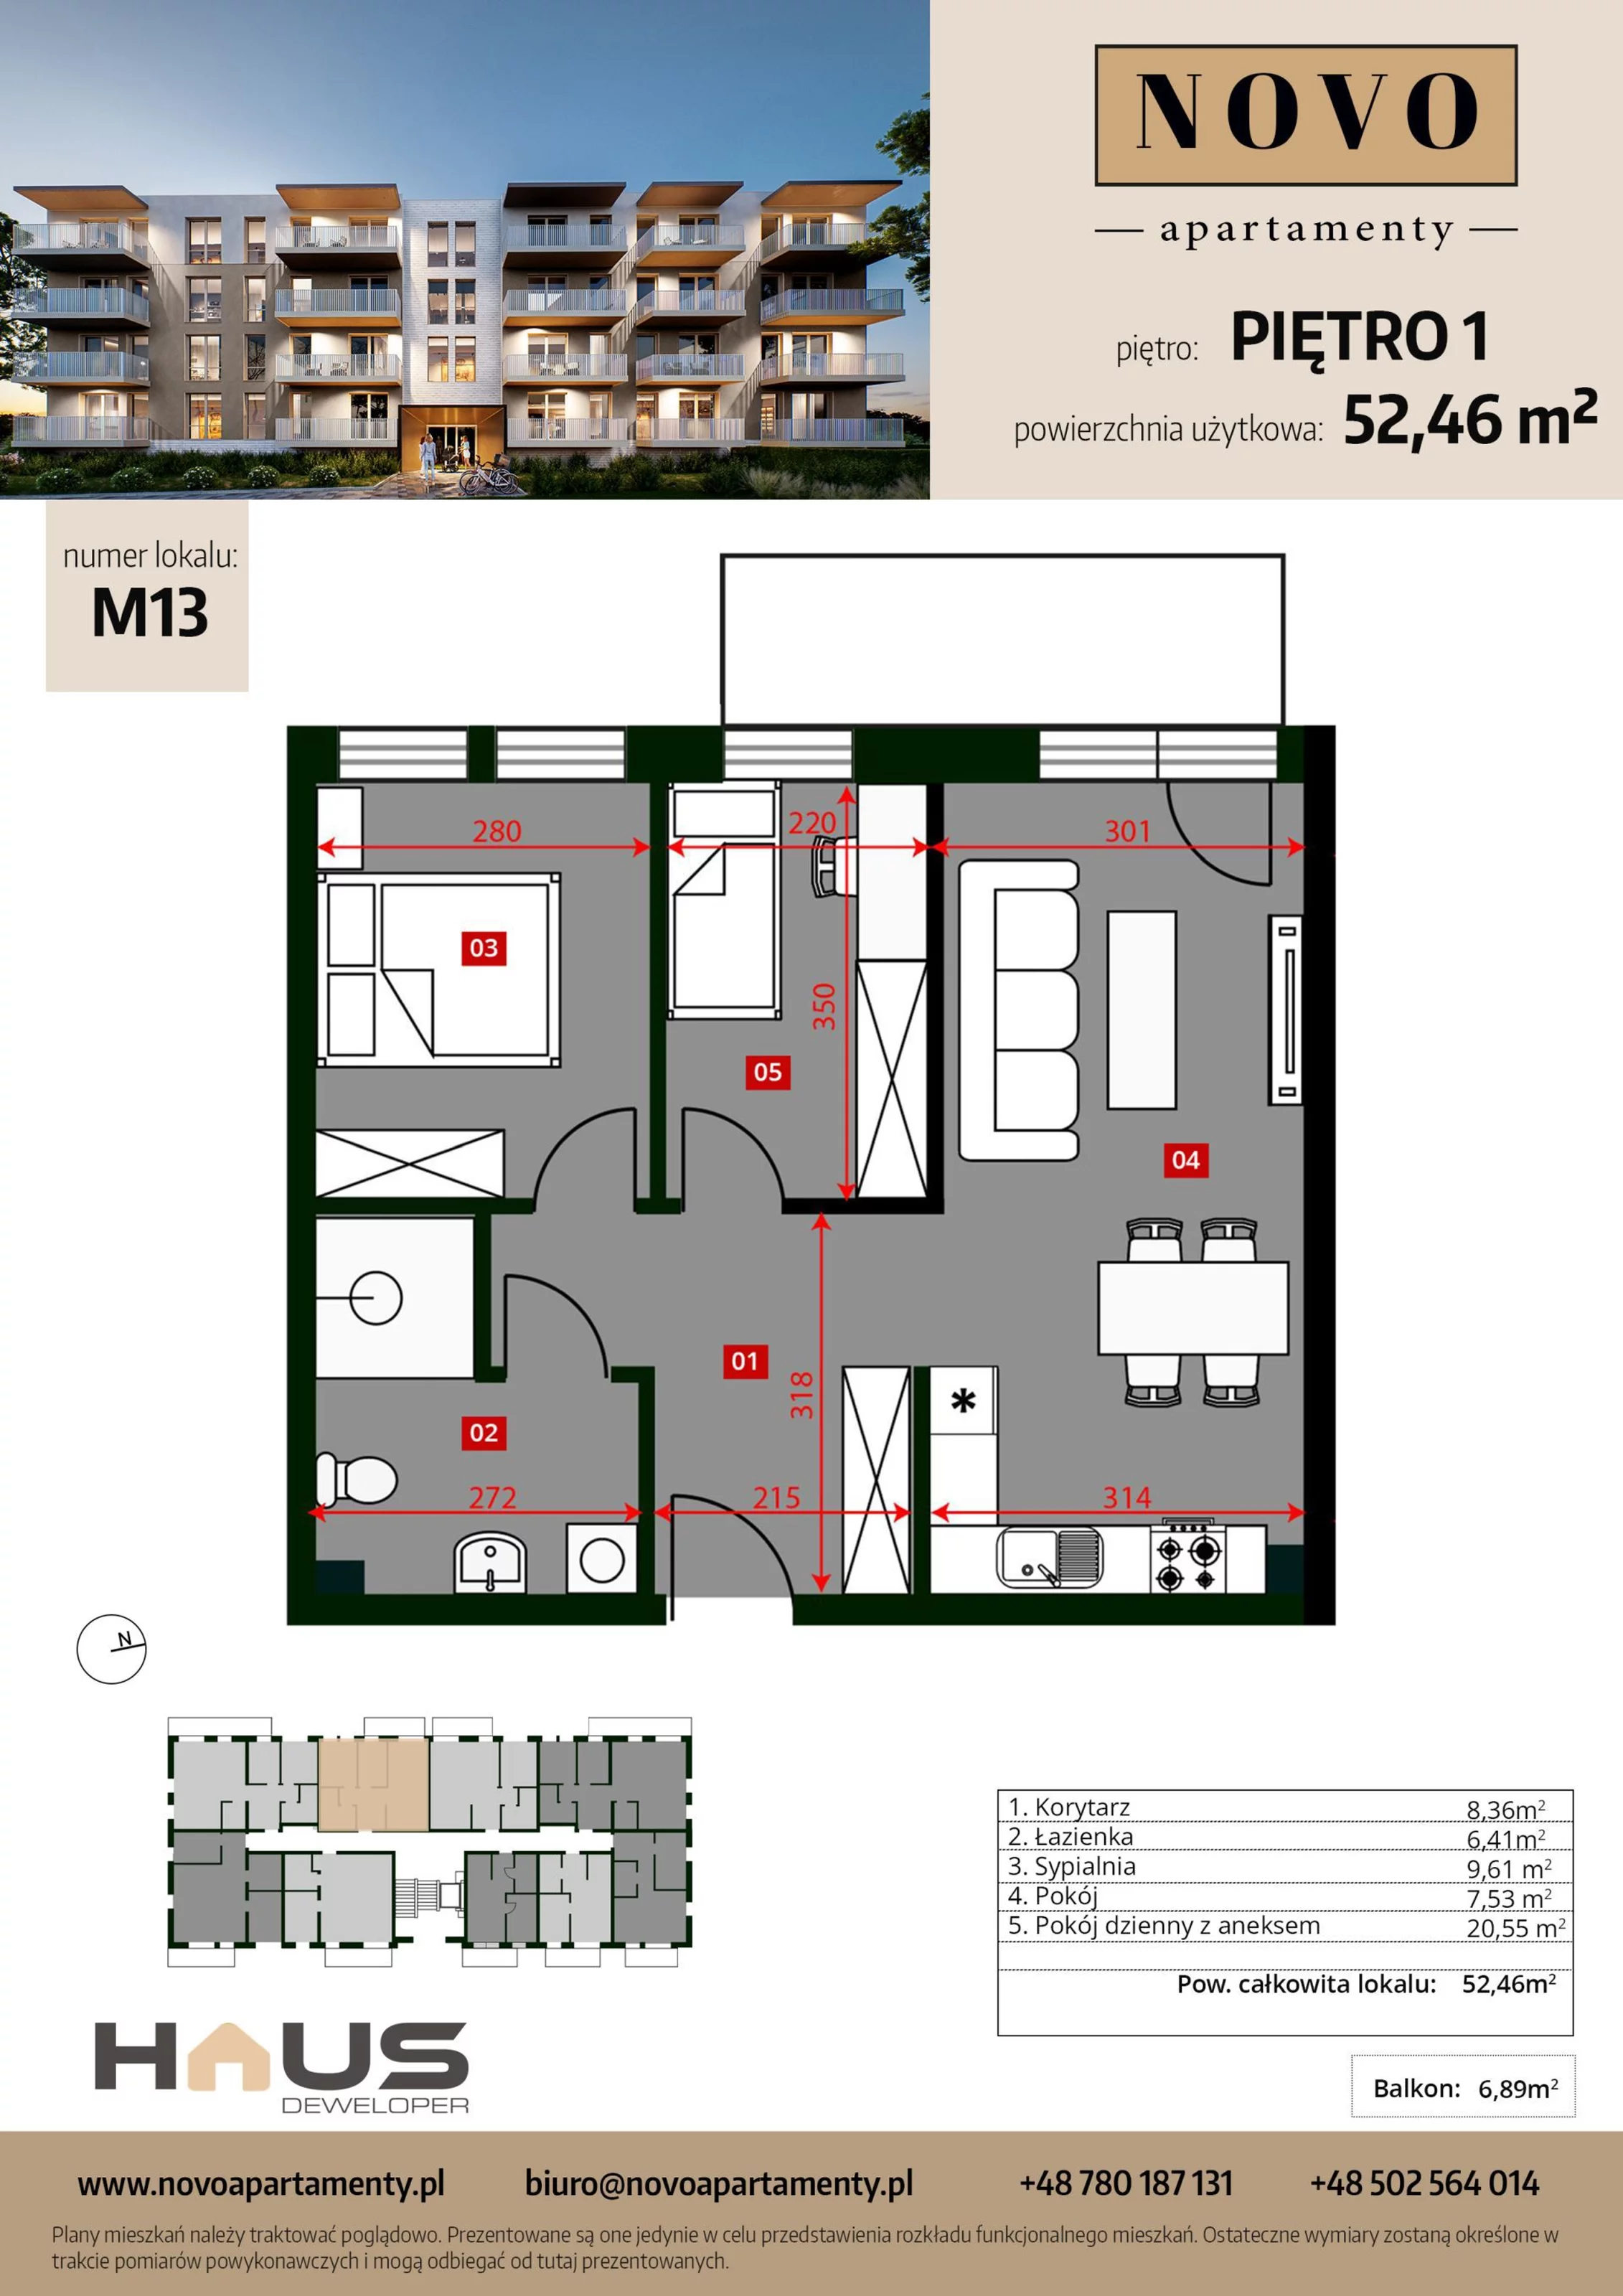 Mieszkanie 52,46 m², piętro 1, oferta nr M13, Apartamenty NOVO, Nysa, ul. Franciszkańska